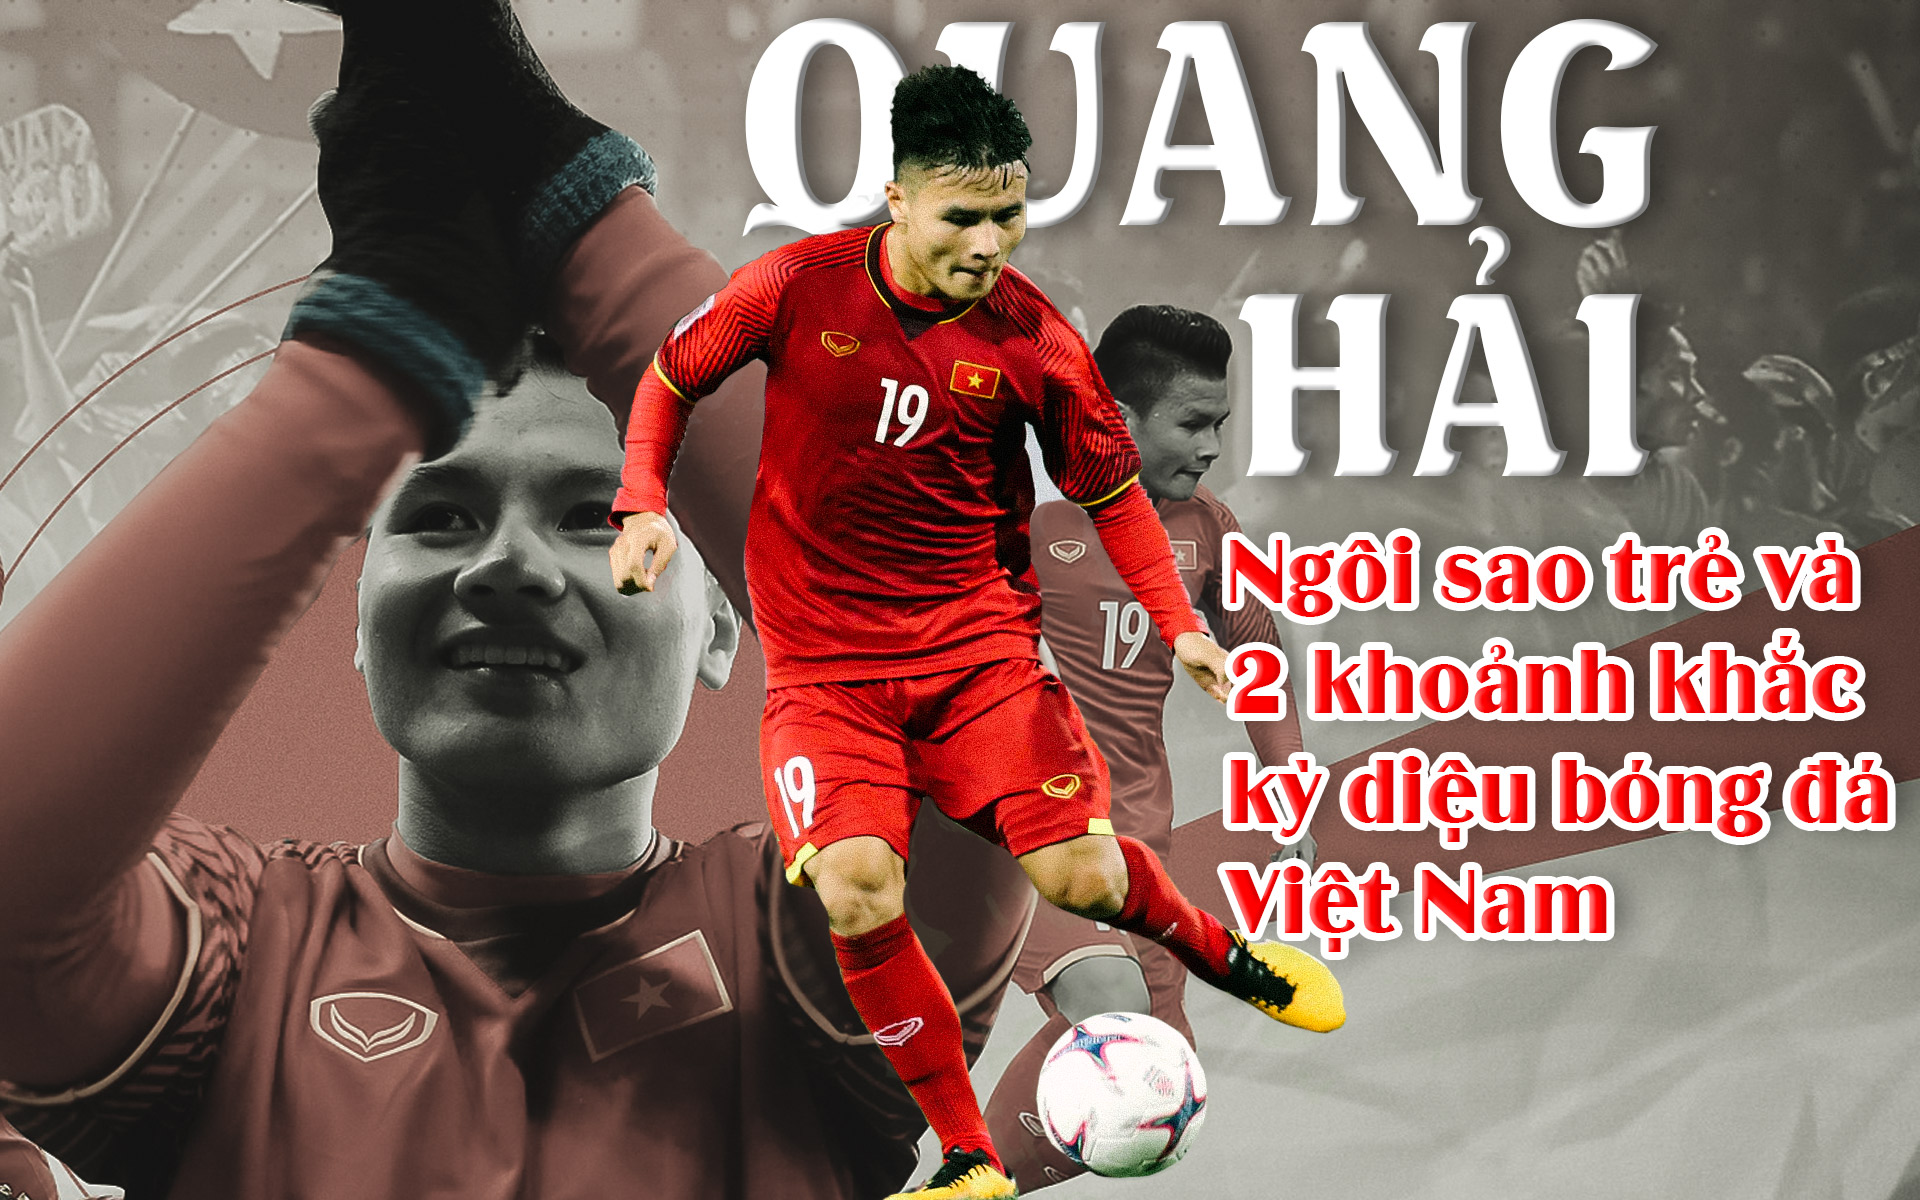 Quang Hải – Ngôi sao trẻ & 2 khoảnh khắc kỳ diệu bóng đá Việt Nam - 1